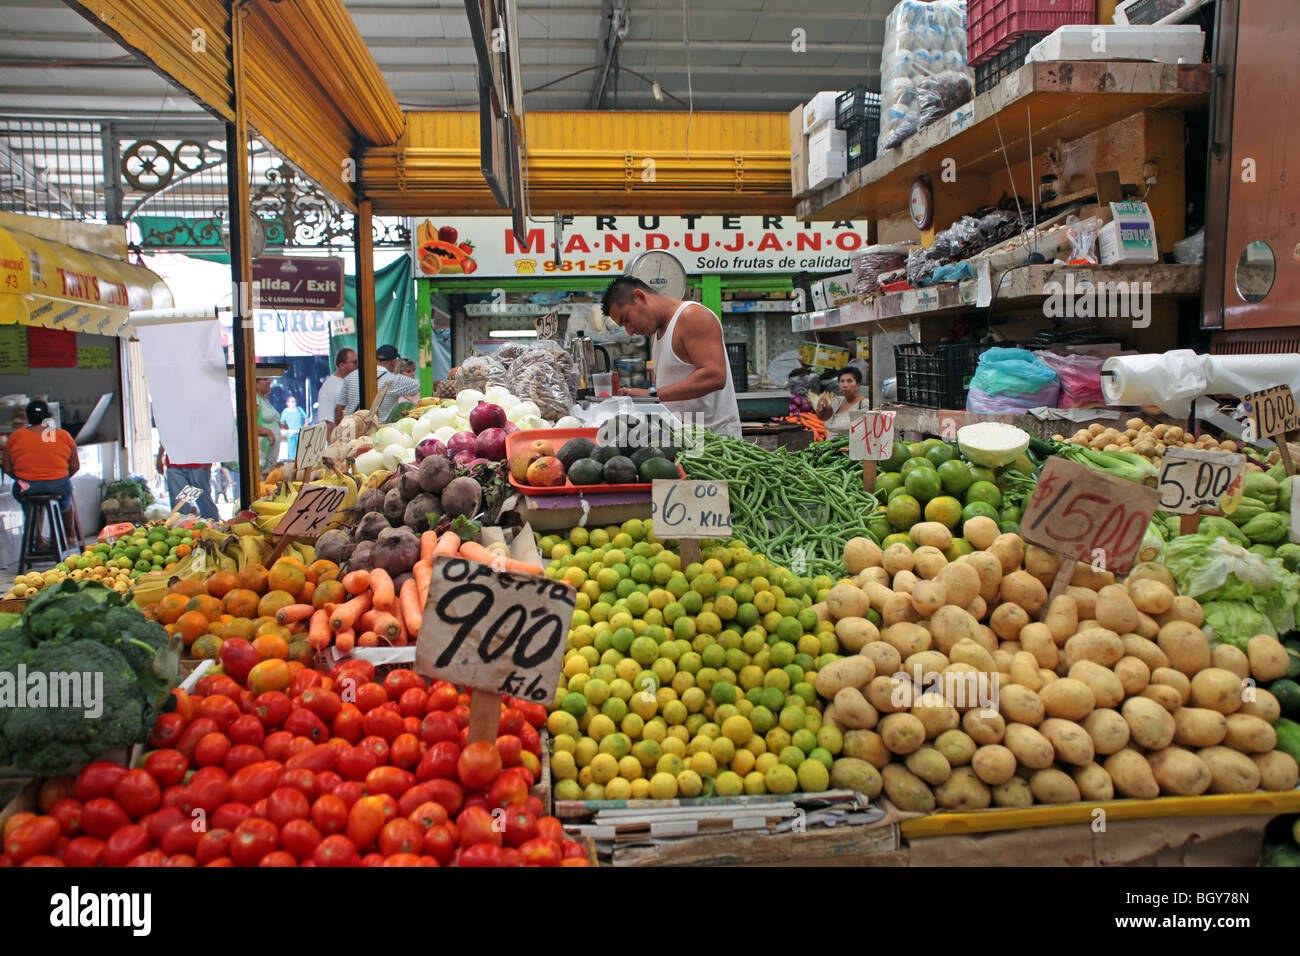 Gemüse und Obst stehen in einem mexikanischen floh- und Lebensmittel-Markt, Mazatlan Mexiko. Besitzer in Kurzarm Hemd hinter Theke. Stockfoto